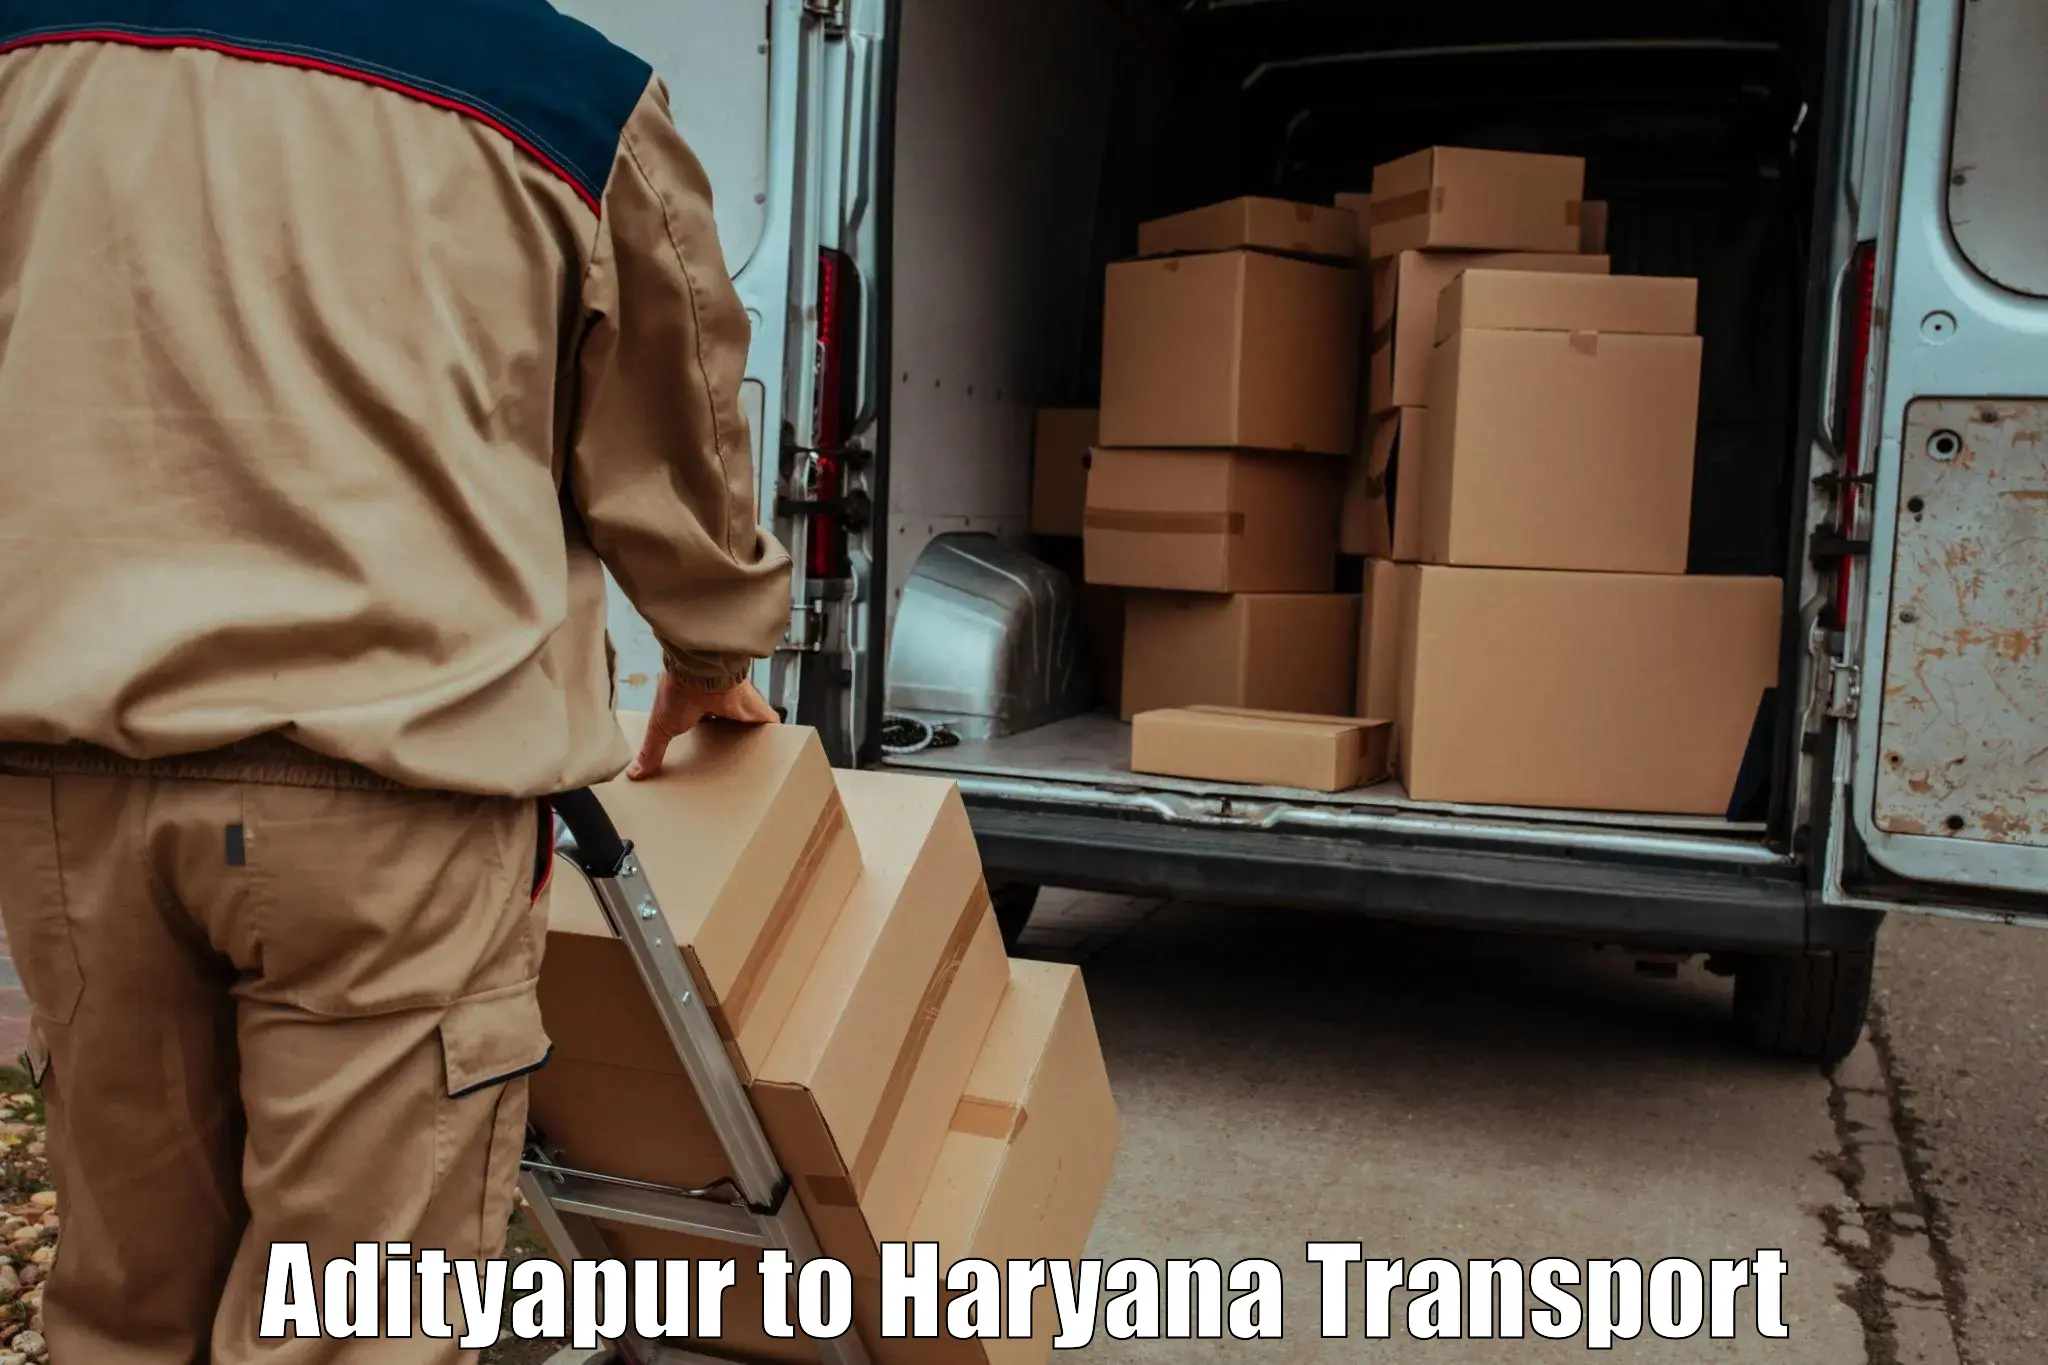 Furniture transport service Adityapur to Hansi